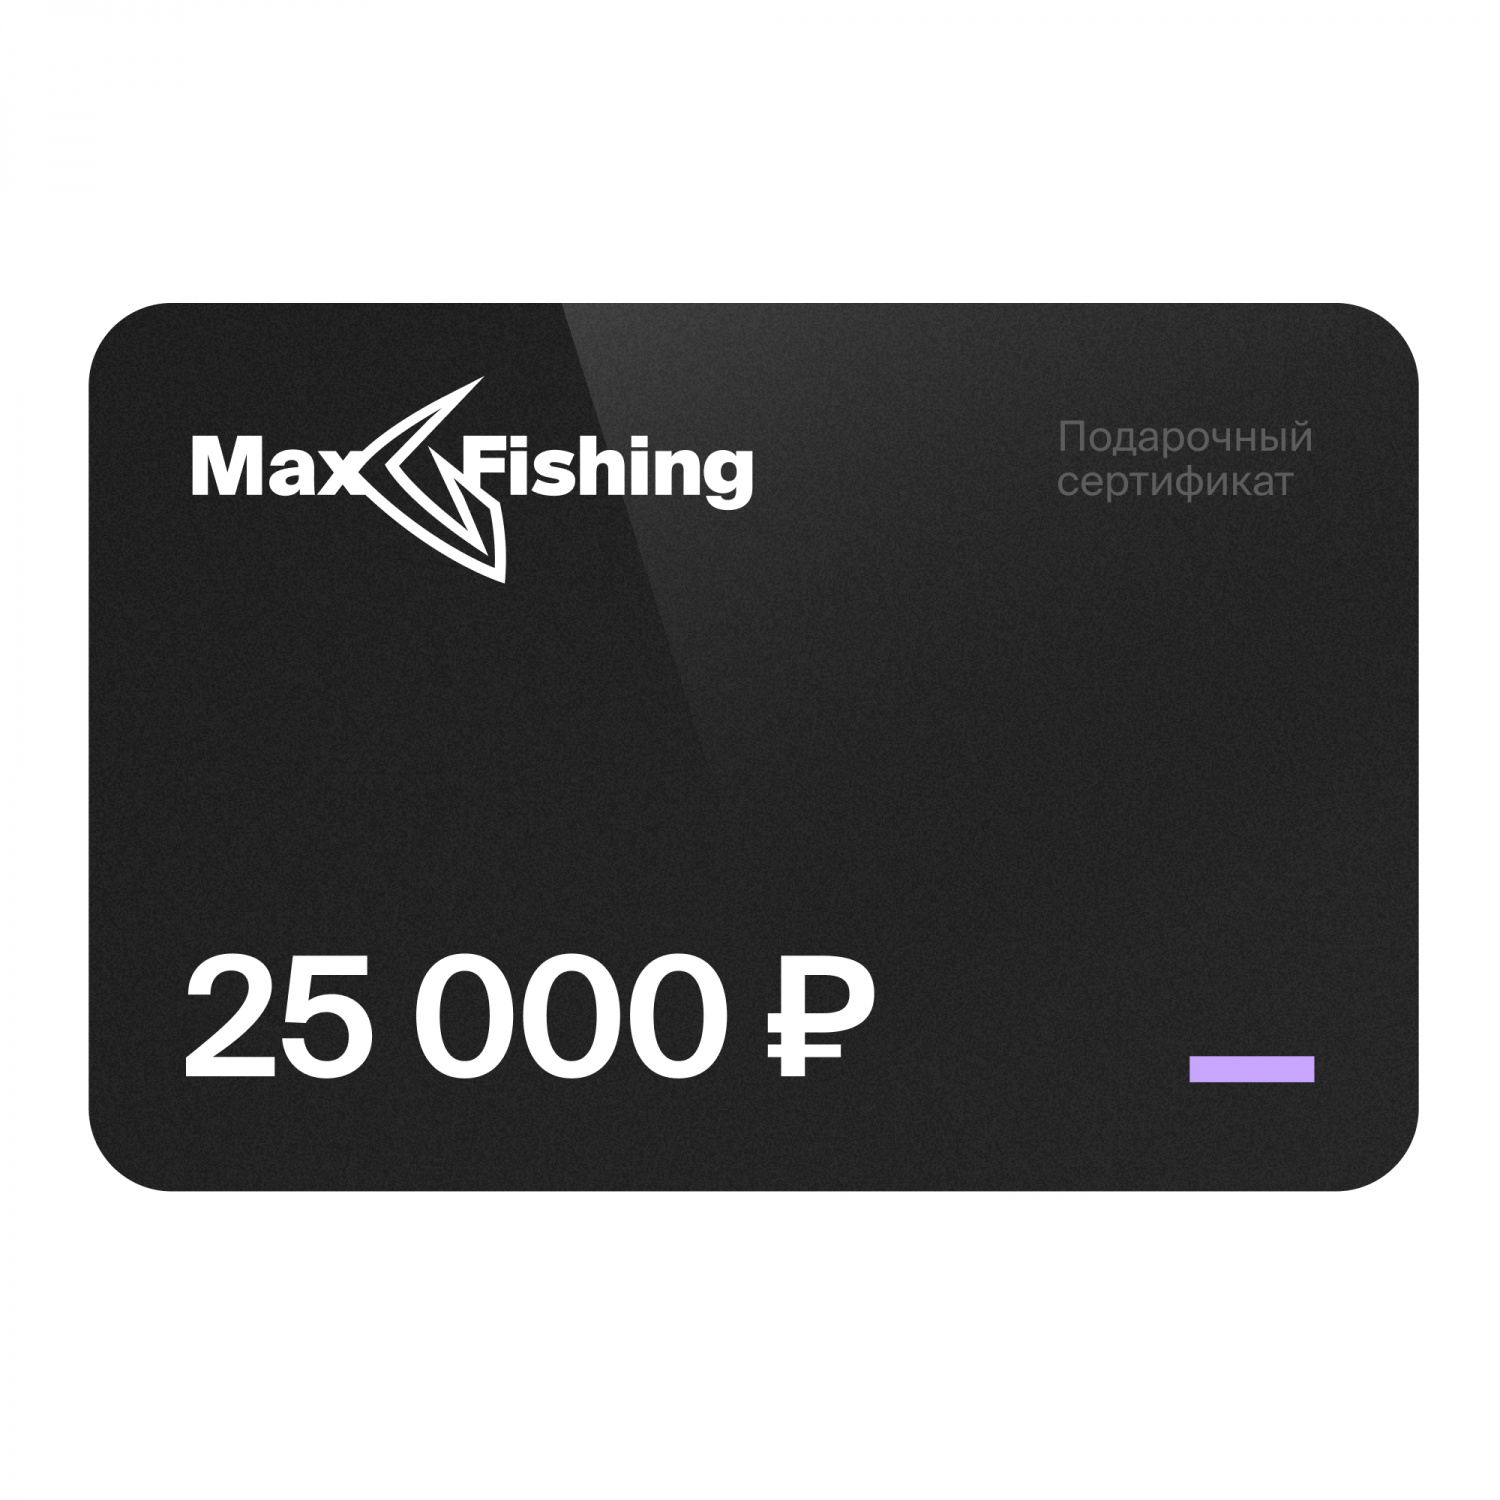 Подарочный сертификат MaxFishing 25 000 ₽ подарочный сертификат на 70 000 рублей